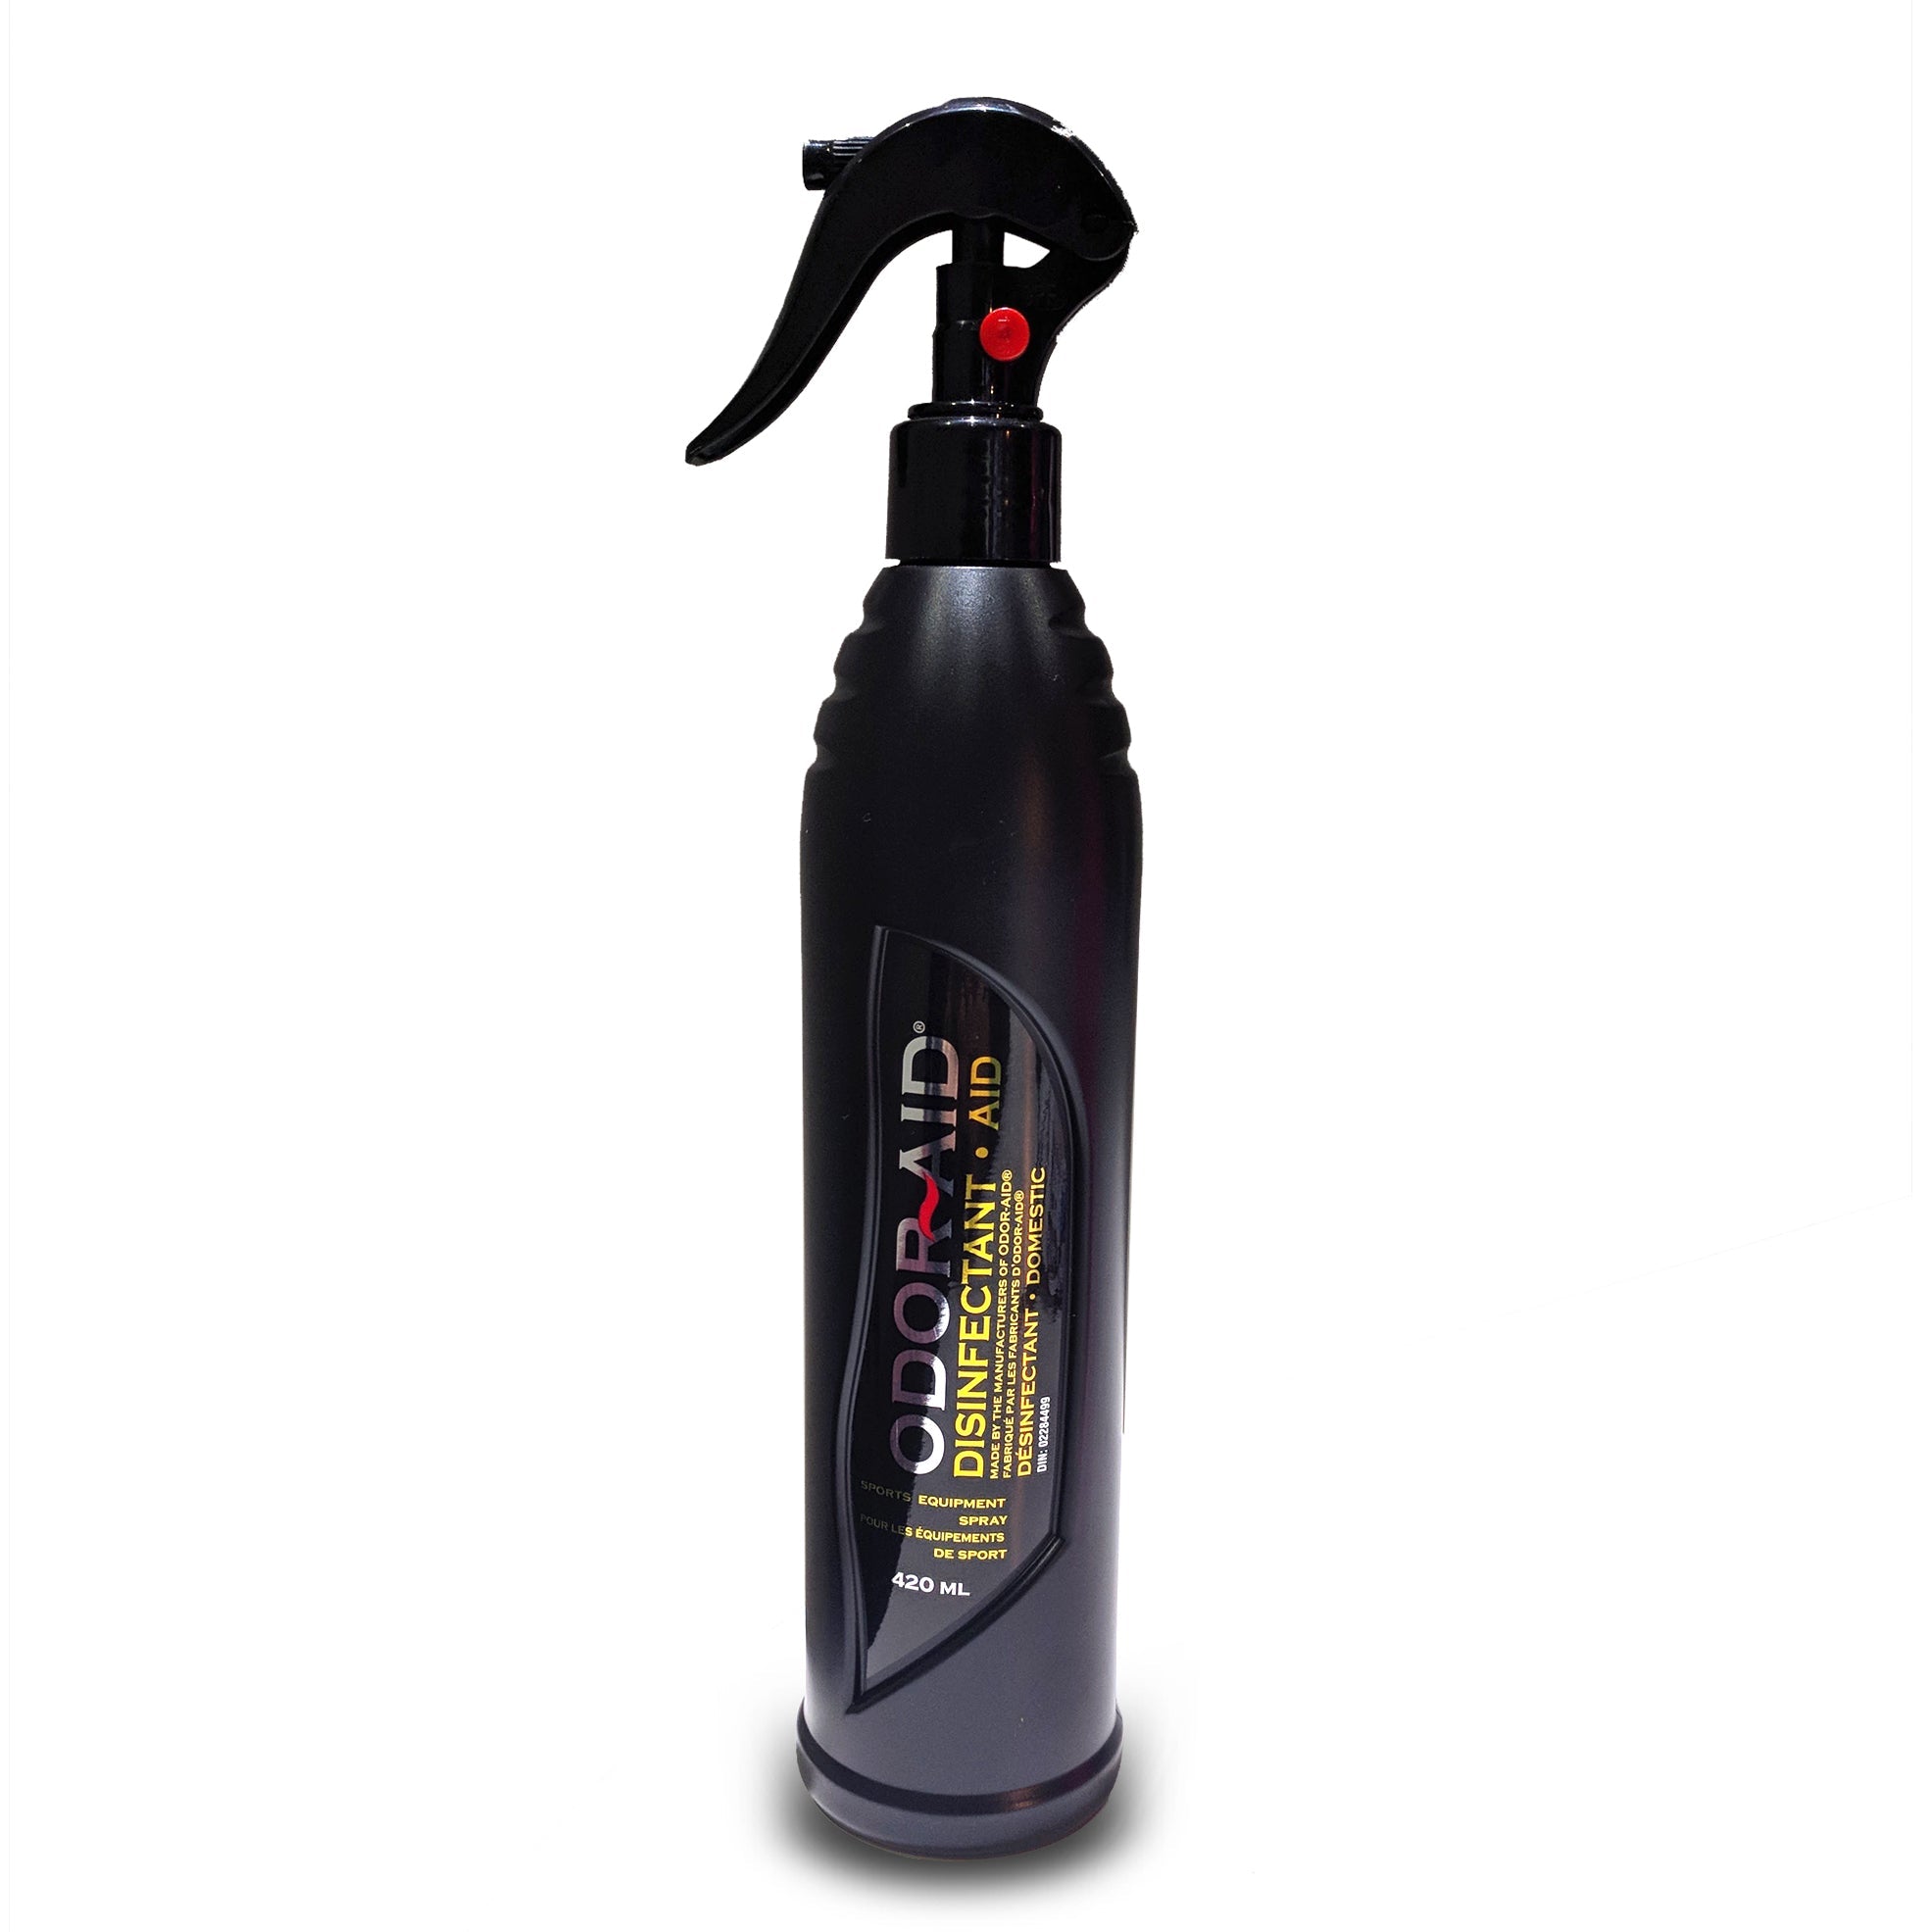 odor-aid-disinfectant-sport-spray